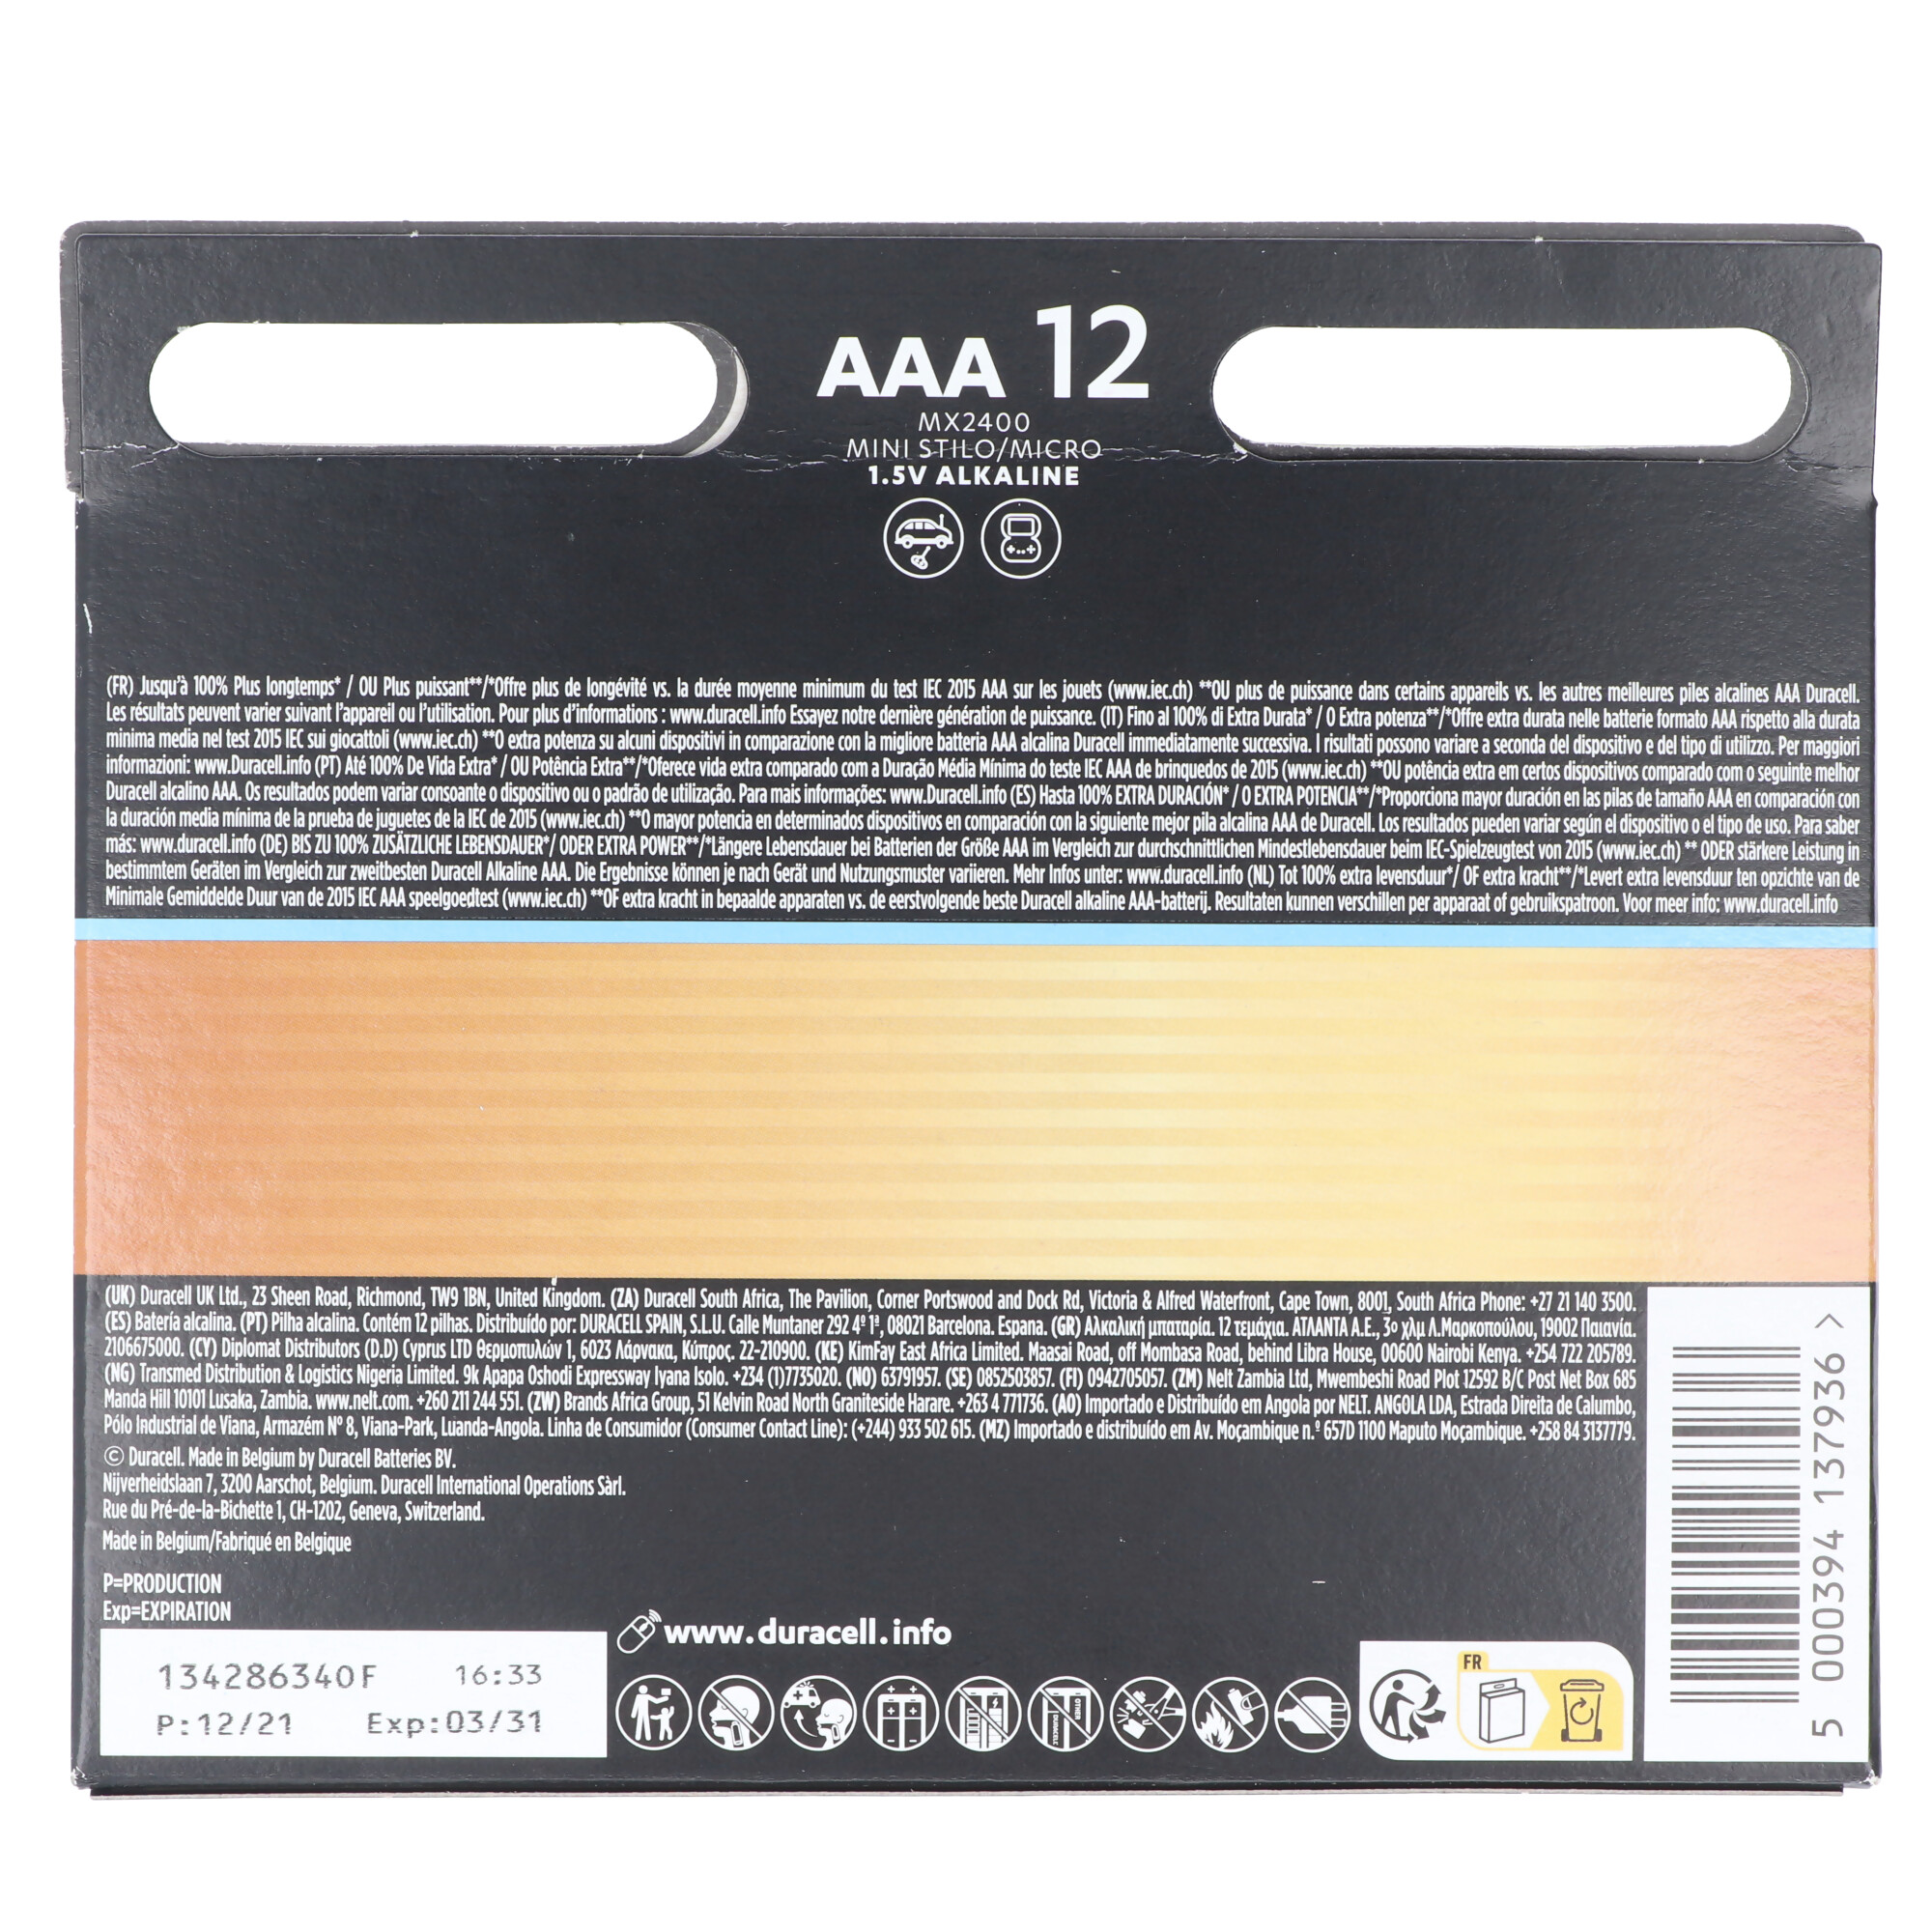 Duracell Optimum AAA Mignon Alkaline-Batterien, 1.5V LR03 MX2400, 12er-Pack